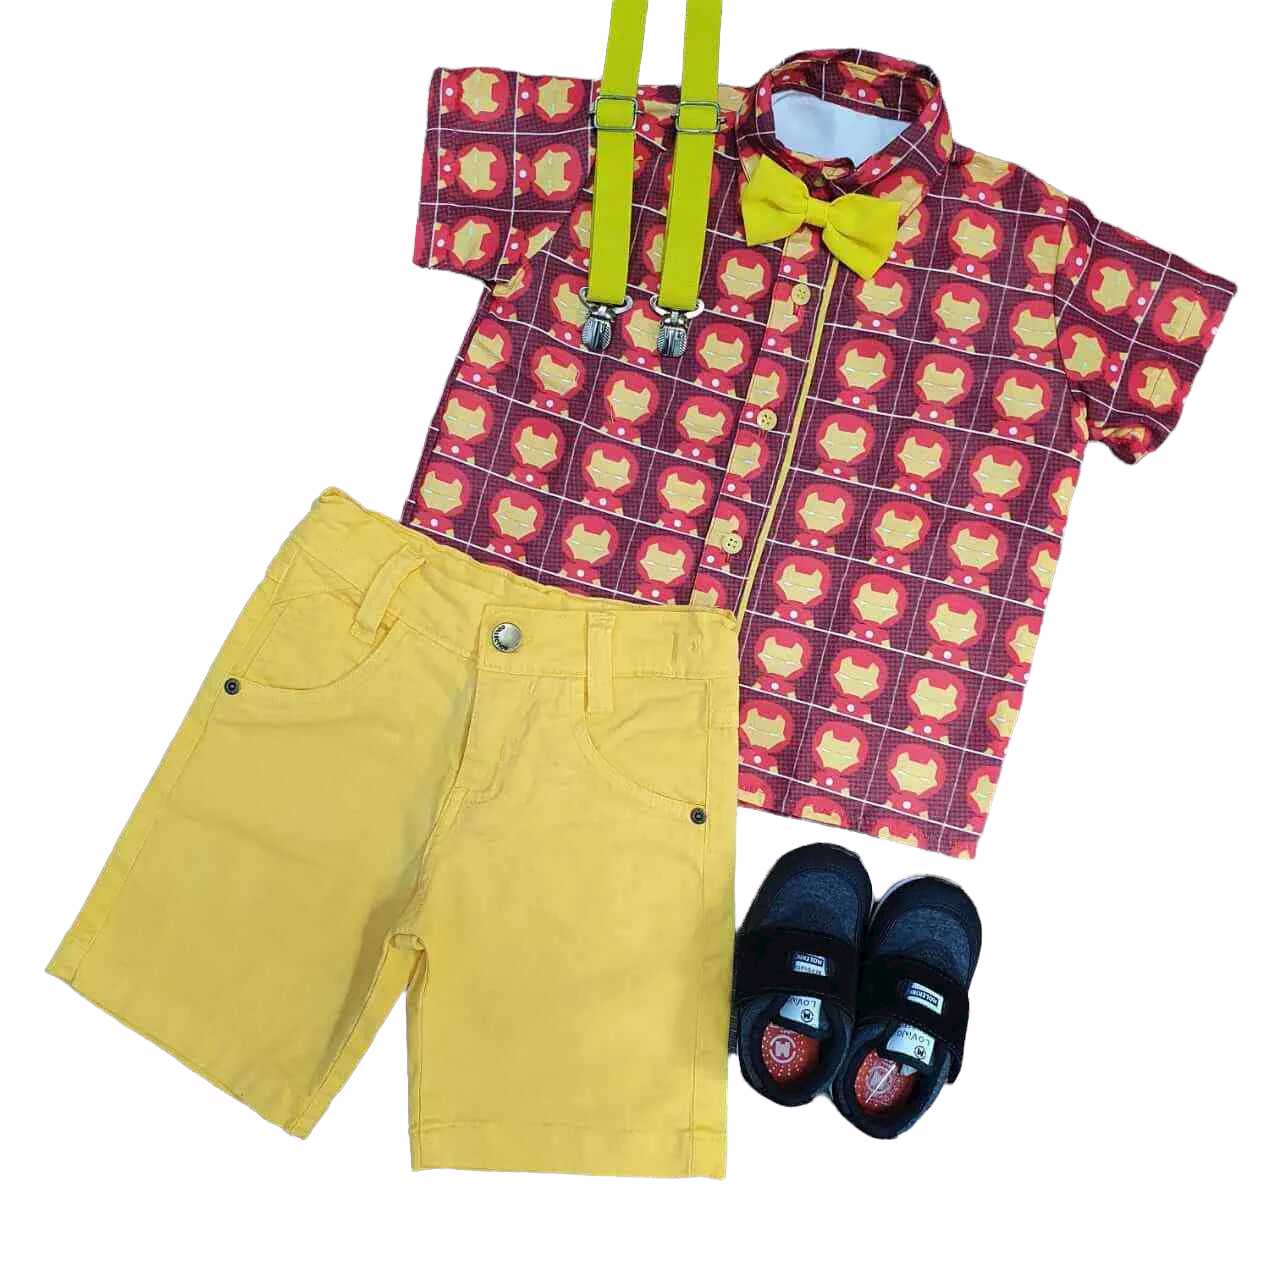 Bermuda Amarela com Camisa Homem de Ferro Infantil - Lojinha da Vivi